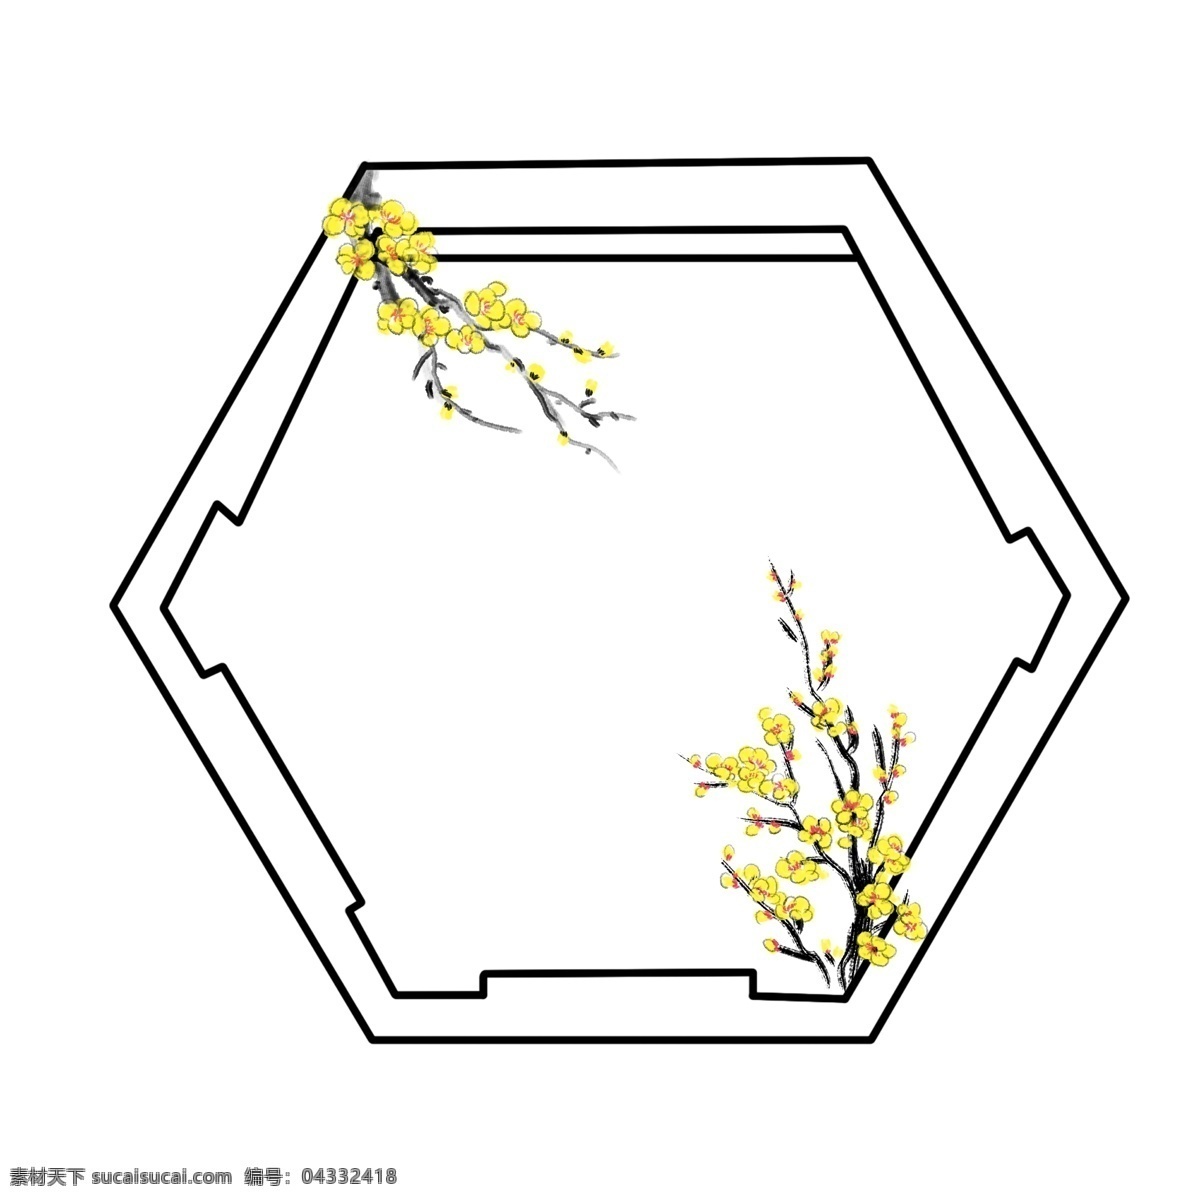 开 满 花朵 树枝 边框 插画 美景 风景 花框 花枝 植物边框 六边形边框 黄色的花朵 开满花的树枝 带花框插画